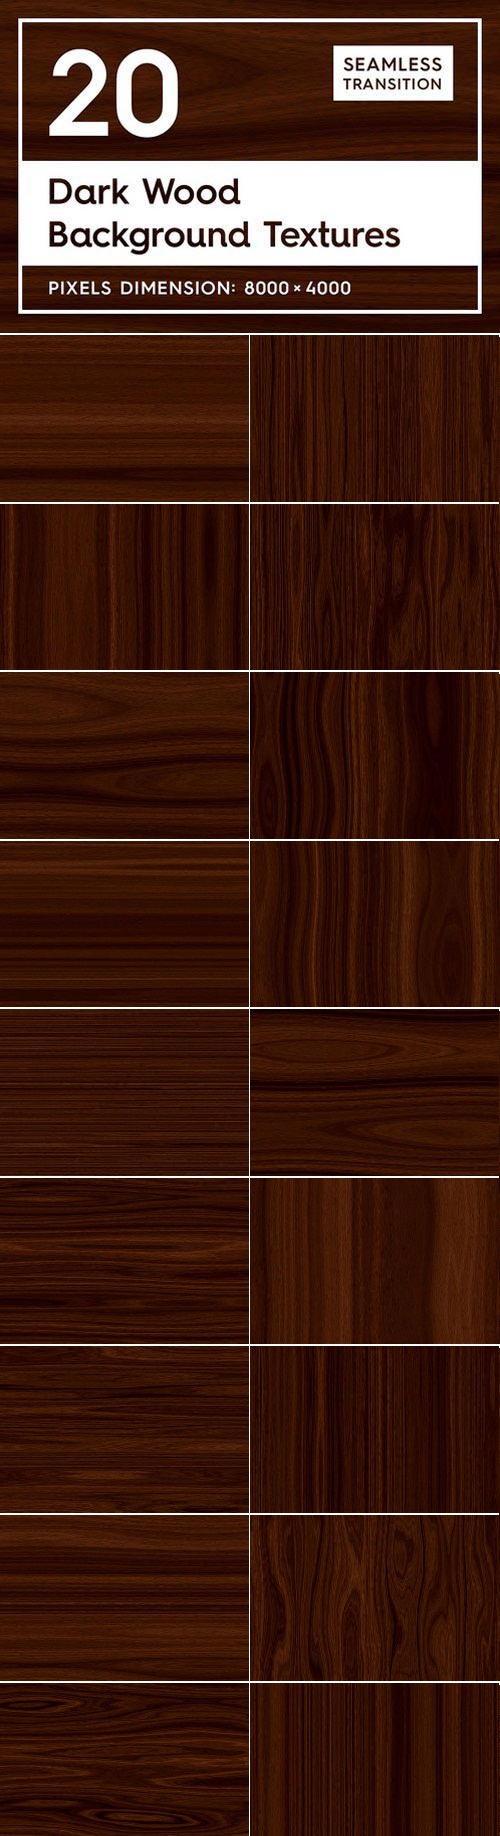 20 Dark Wood Background Textures 2166807